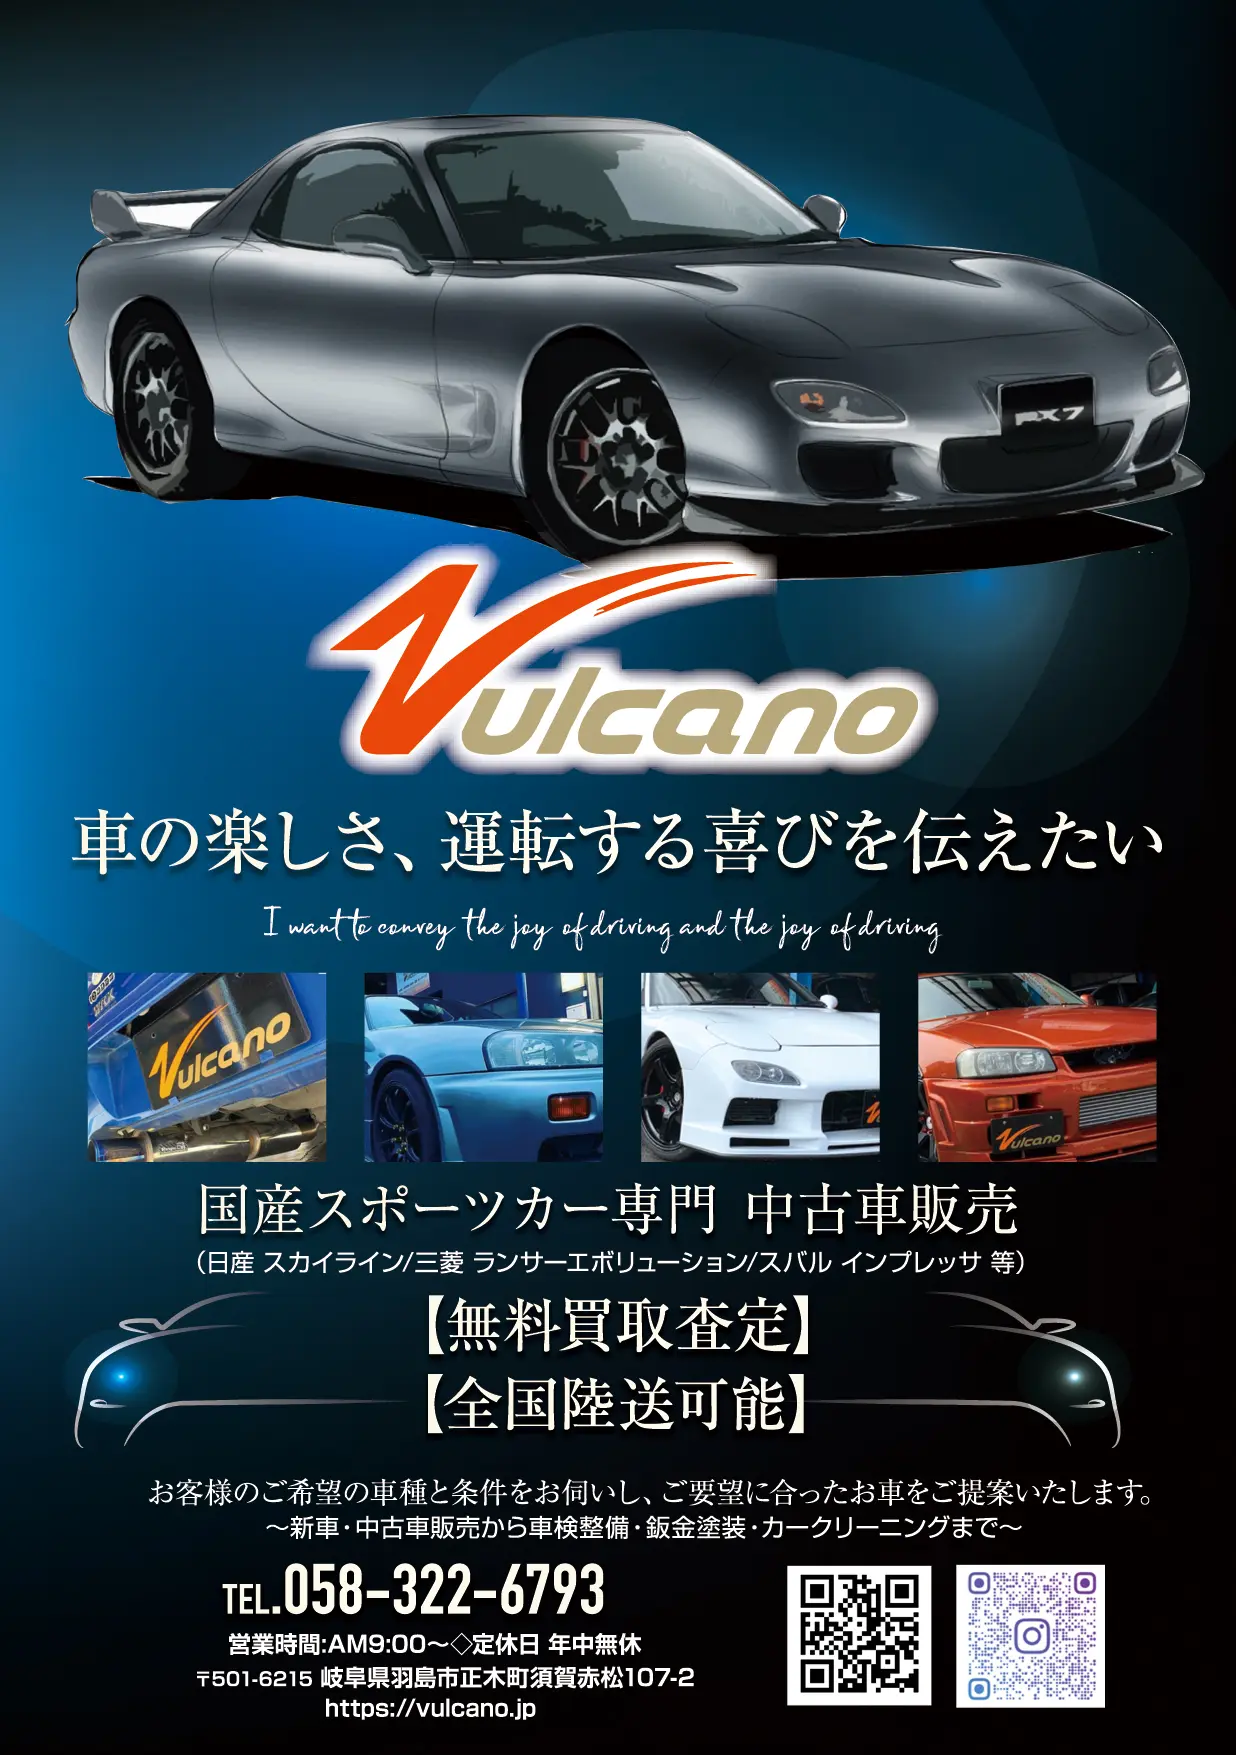 国産スポーツカーの買取ならVulcanoにご相談ください | Vulcano